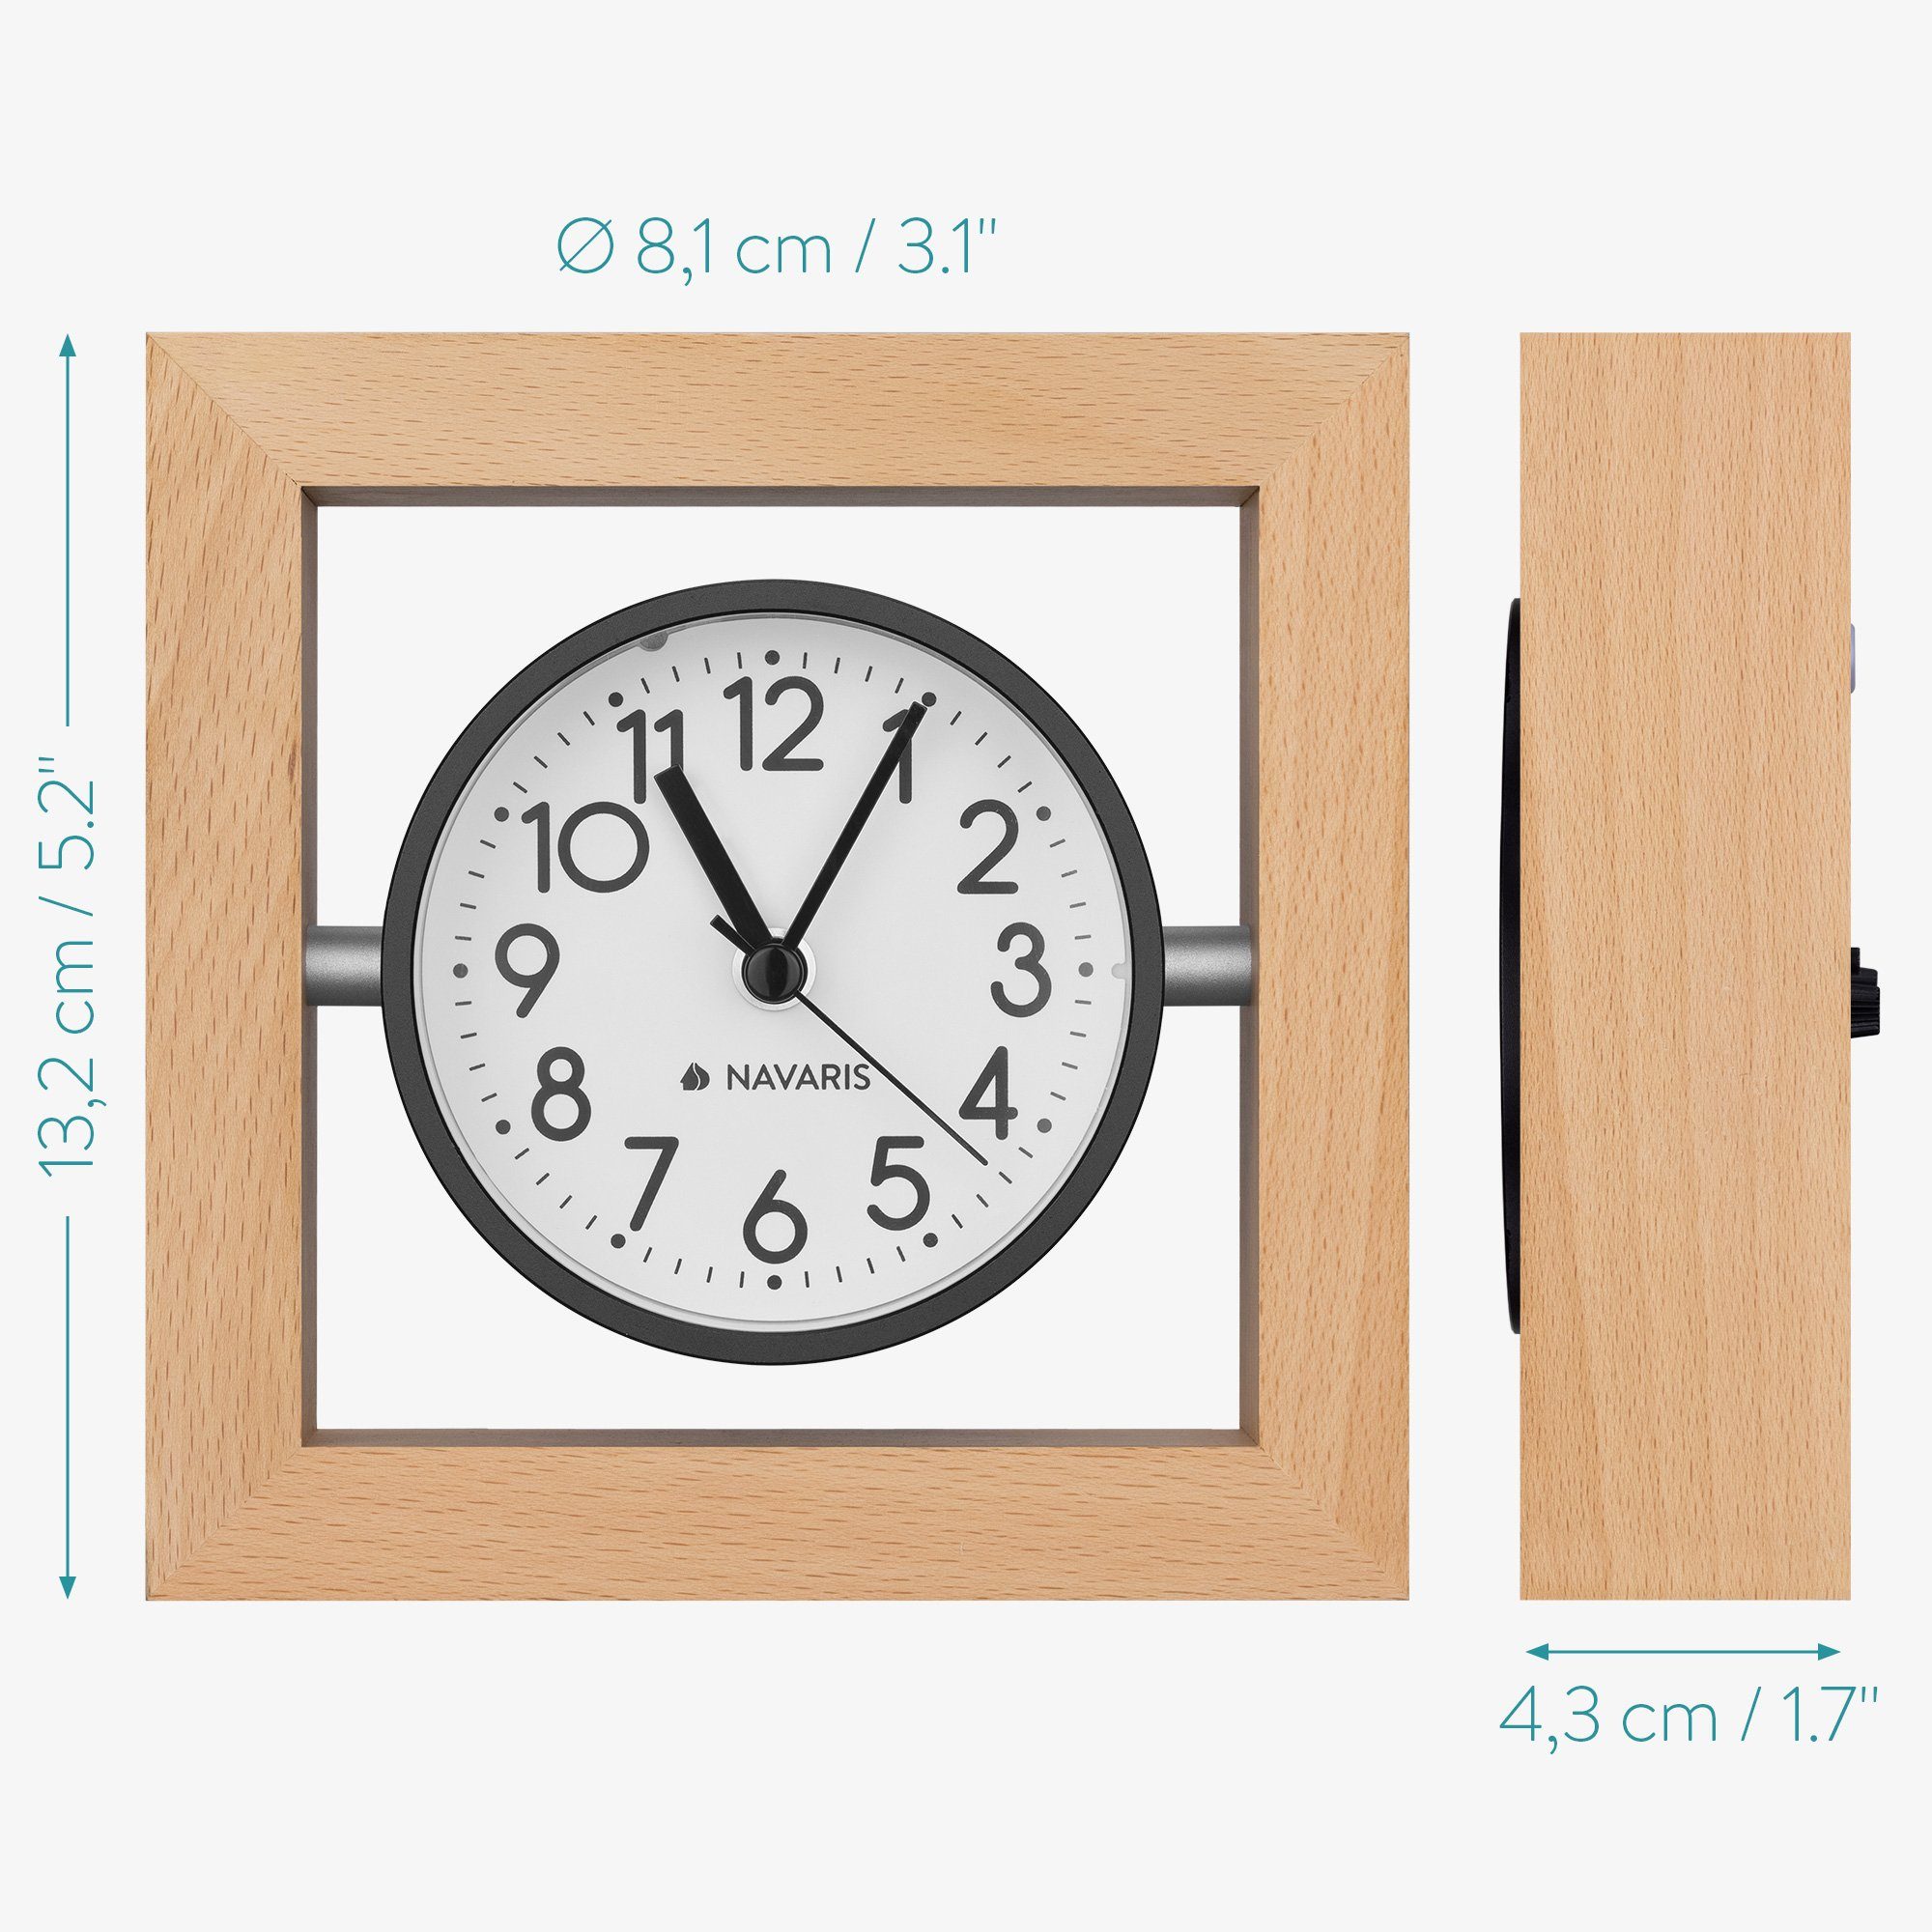 4,3cm Tischuhr x 13,2 13,2 Navaris Design Hellbraun Holz Analog - x Quadrat Tischuhr